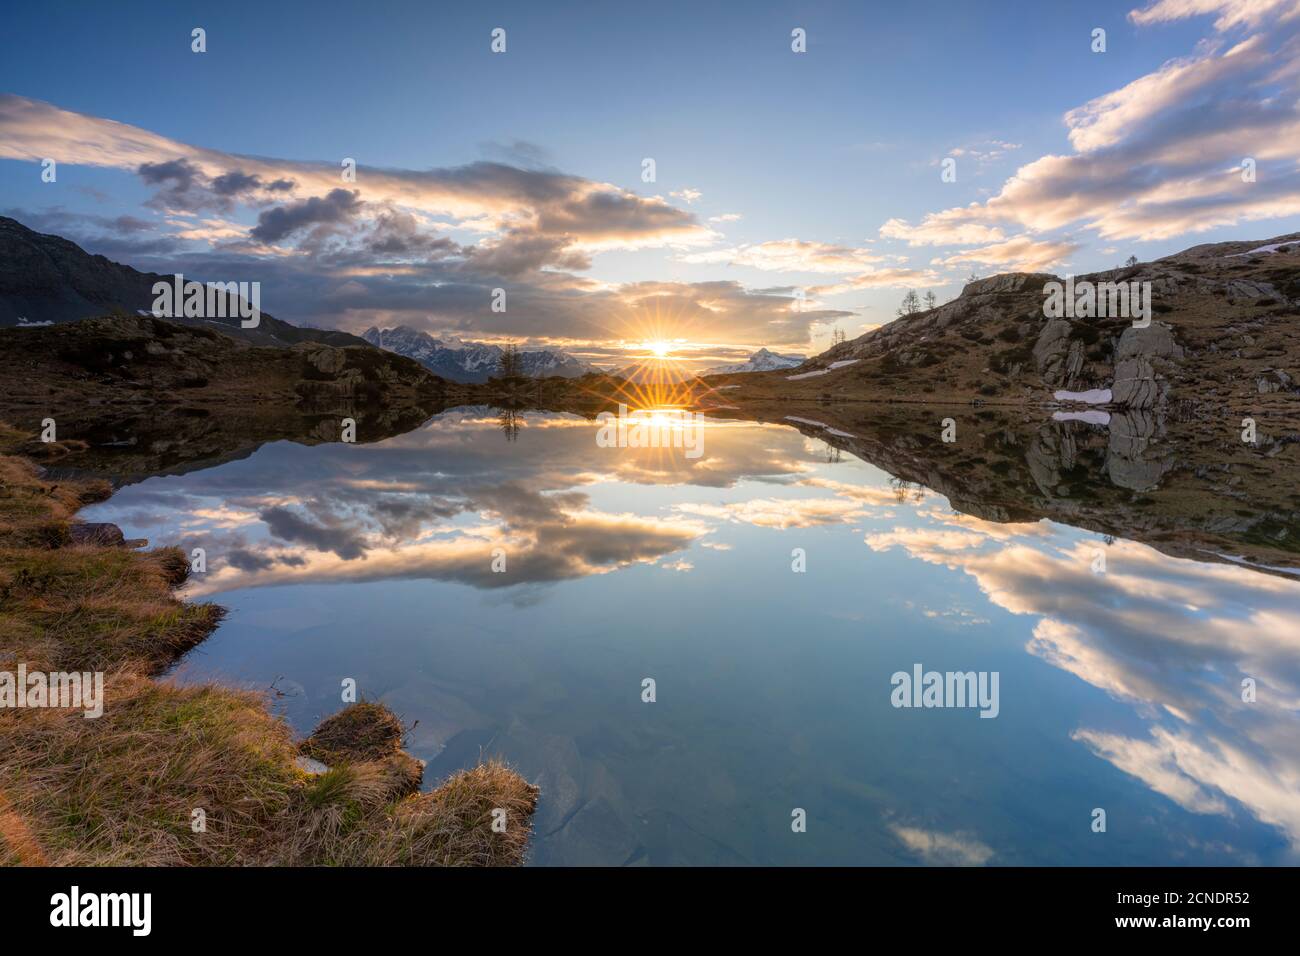 Le soleil survolez les eaux claires du lac Zana au lever du soleil, Valmalenco, province de Sondrio, Valtellina, Lombardie, Italie, Europe Banque D'Images